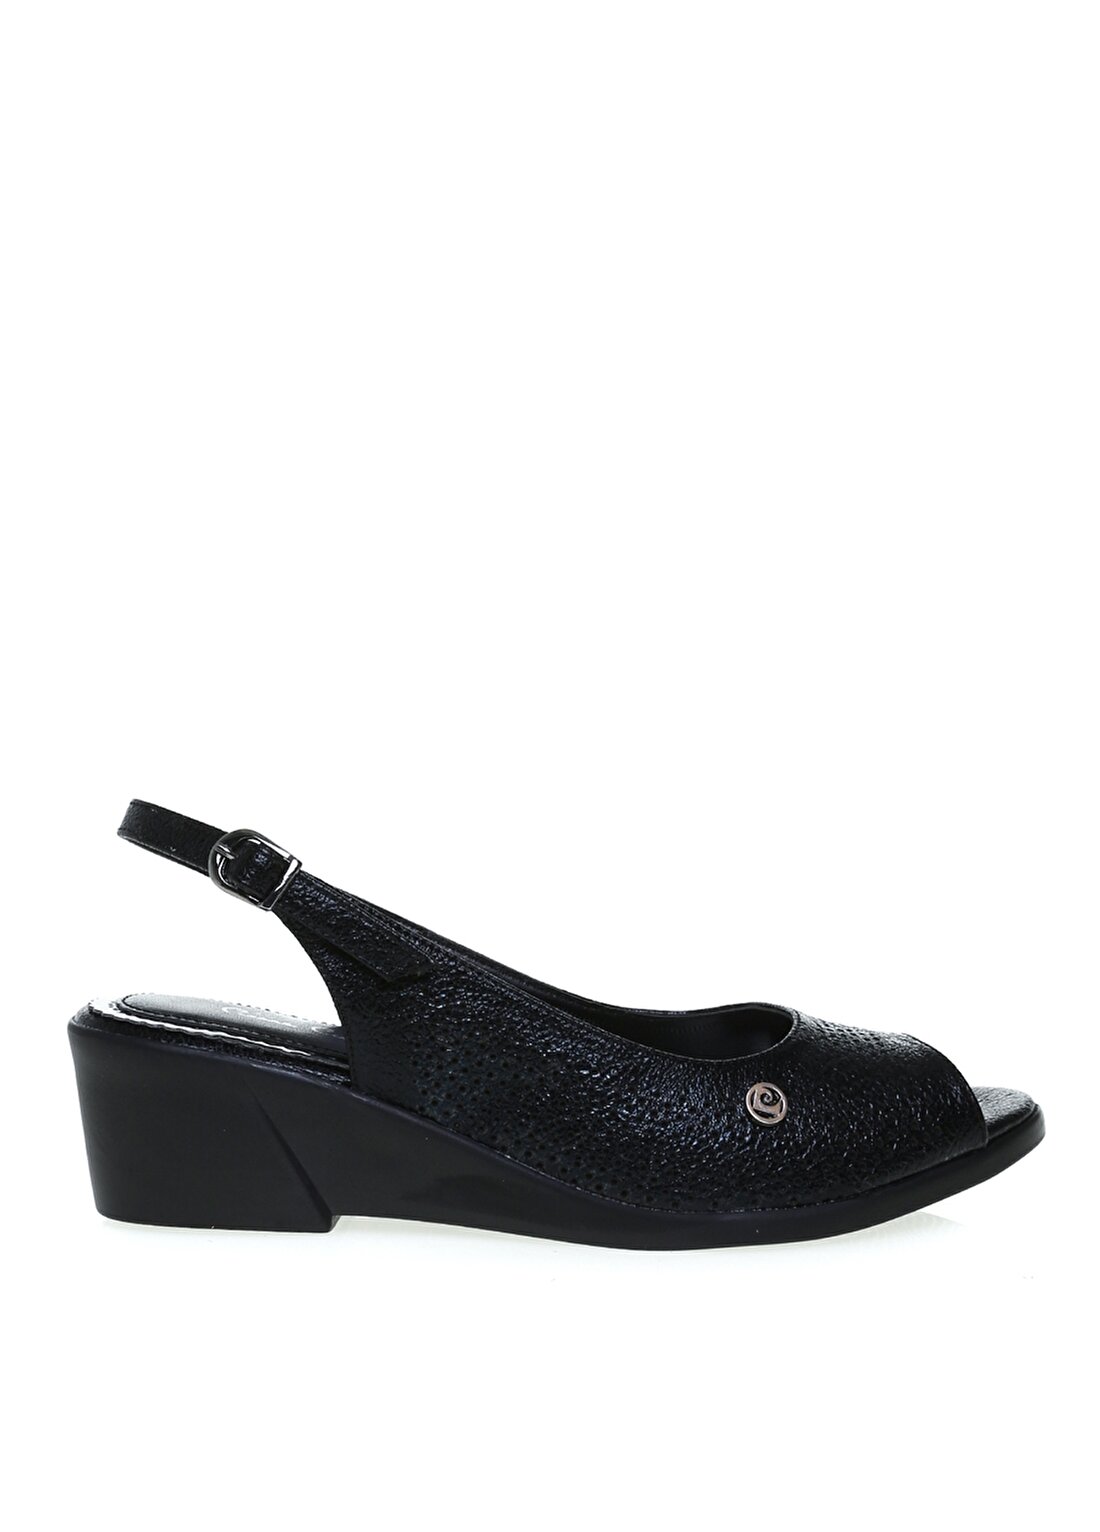 Pierre Cardin Siyah Kadın Topuklu Ayakkabı PC-6660